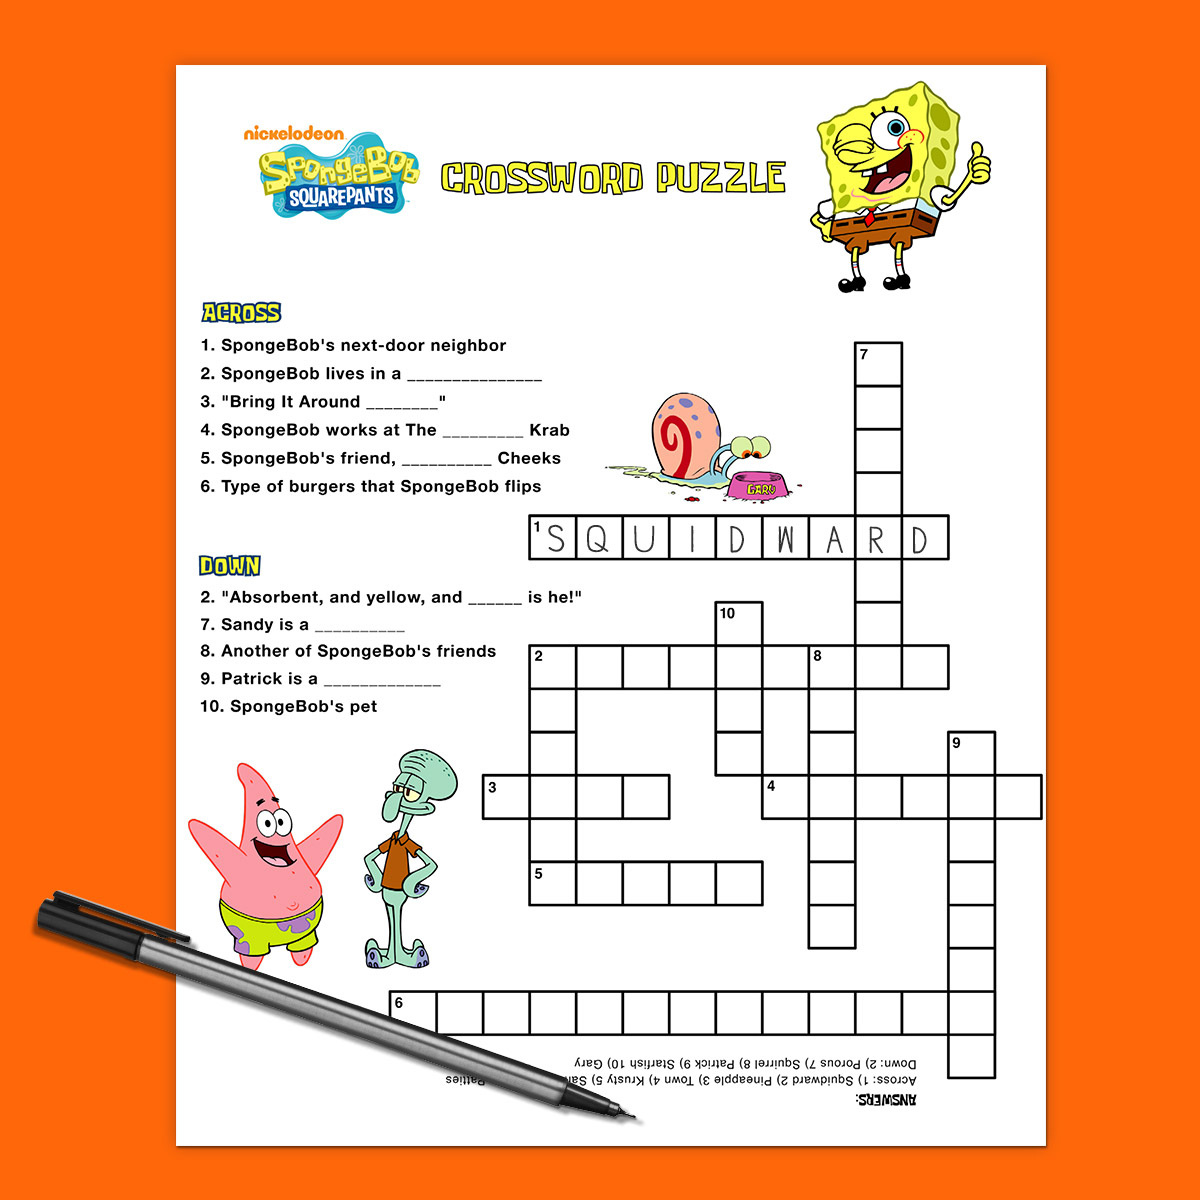 Spongebob Crossword Puzzle | Nickelodeon Parents - Printable Birthday Puzzles